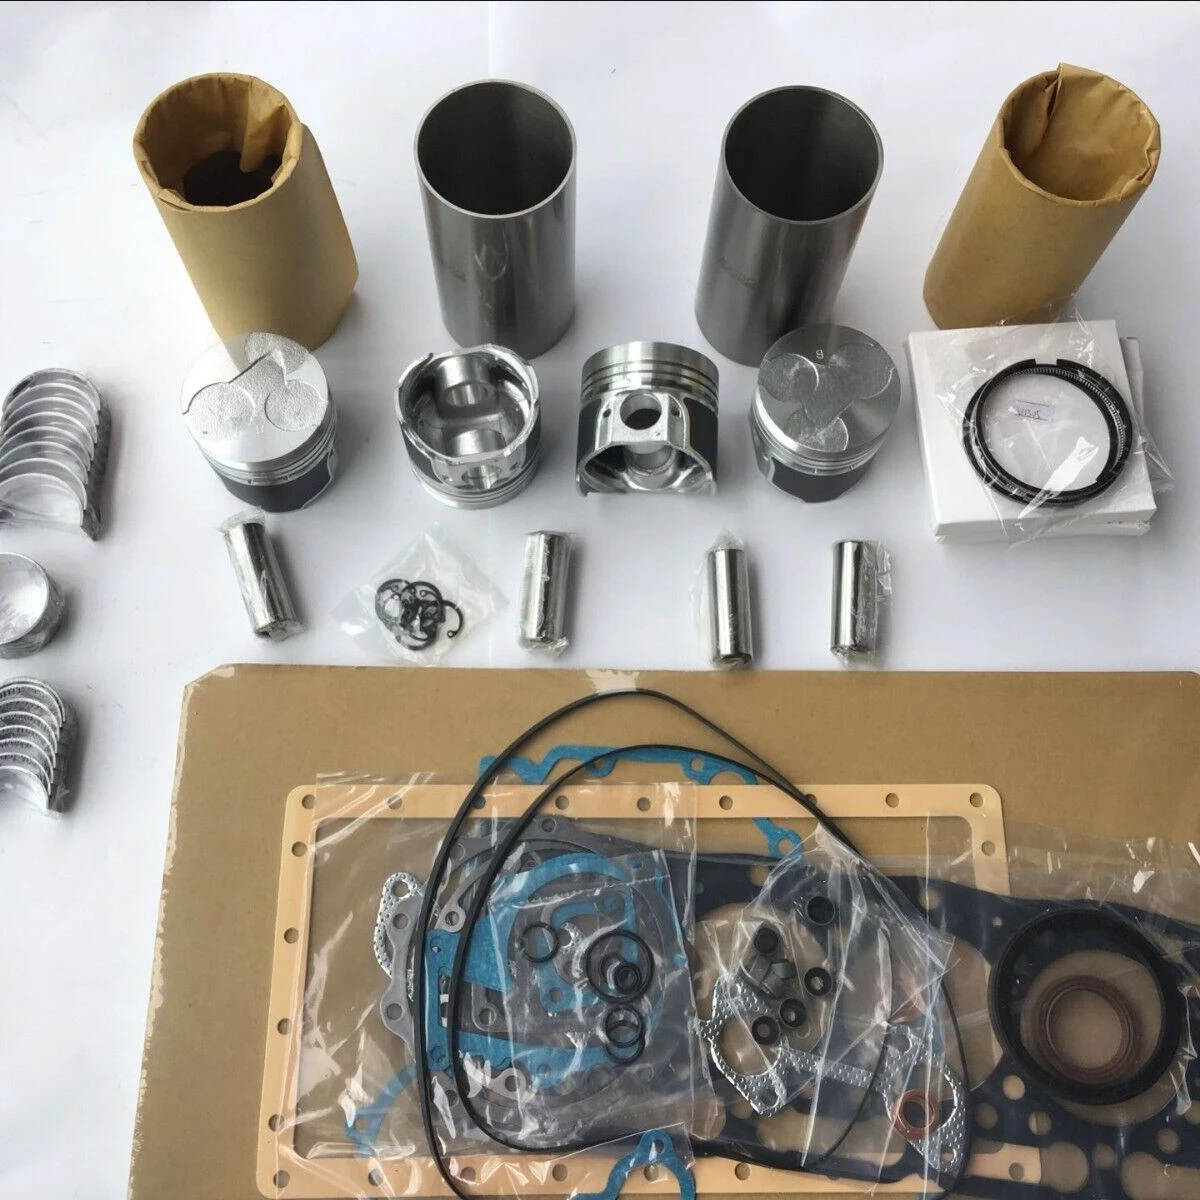 

For kubota V1305 V1305-B rebuild overhaul kit piston ring liner bearing gasket water pump